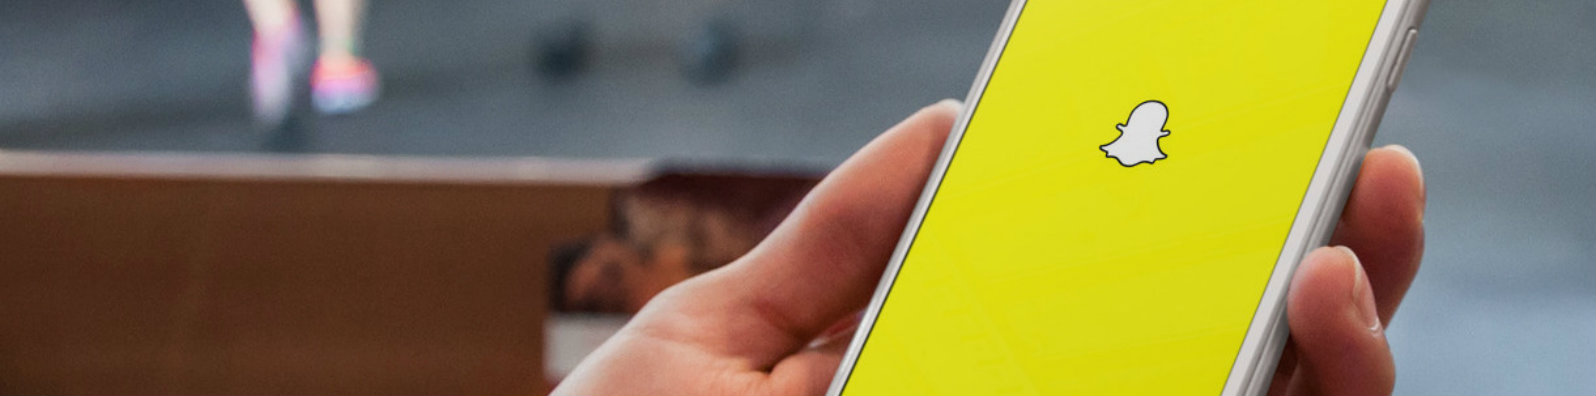 Snapchat İlk Donanım Ürününü Piyasaya Sürüyor